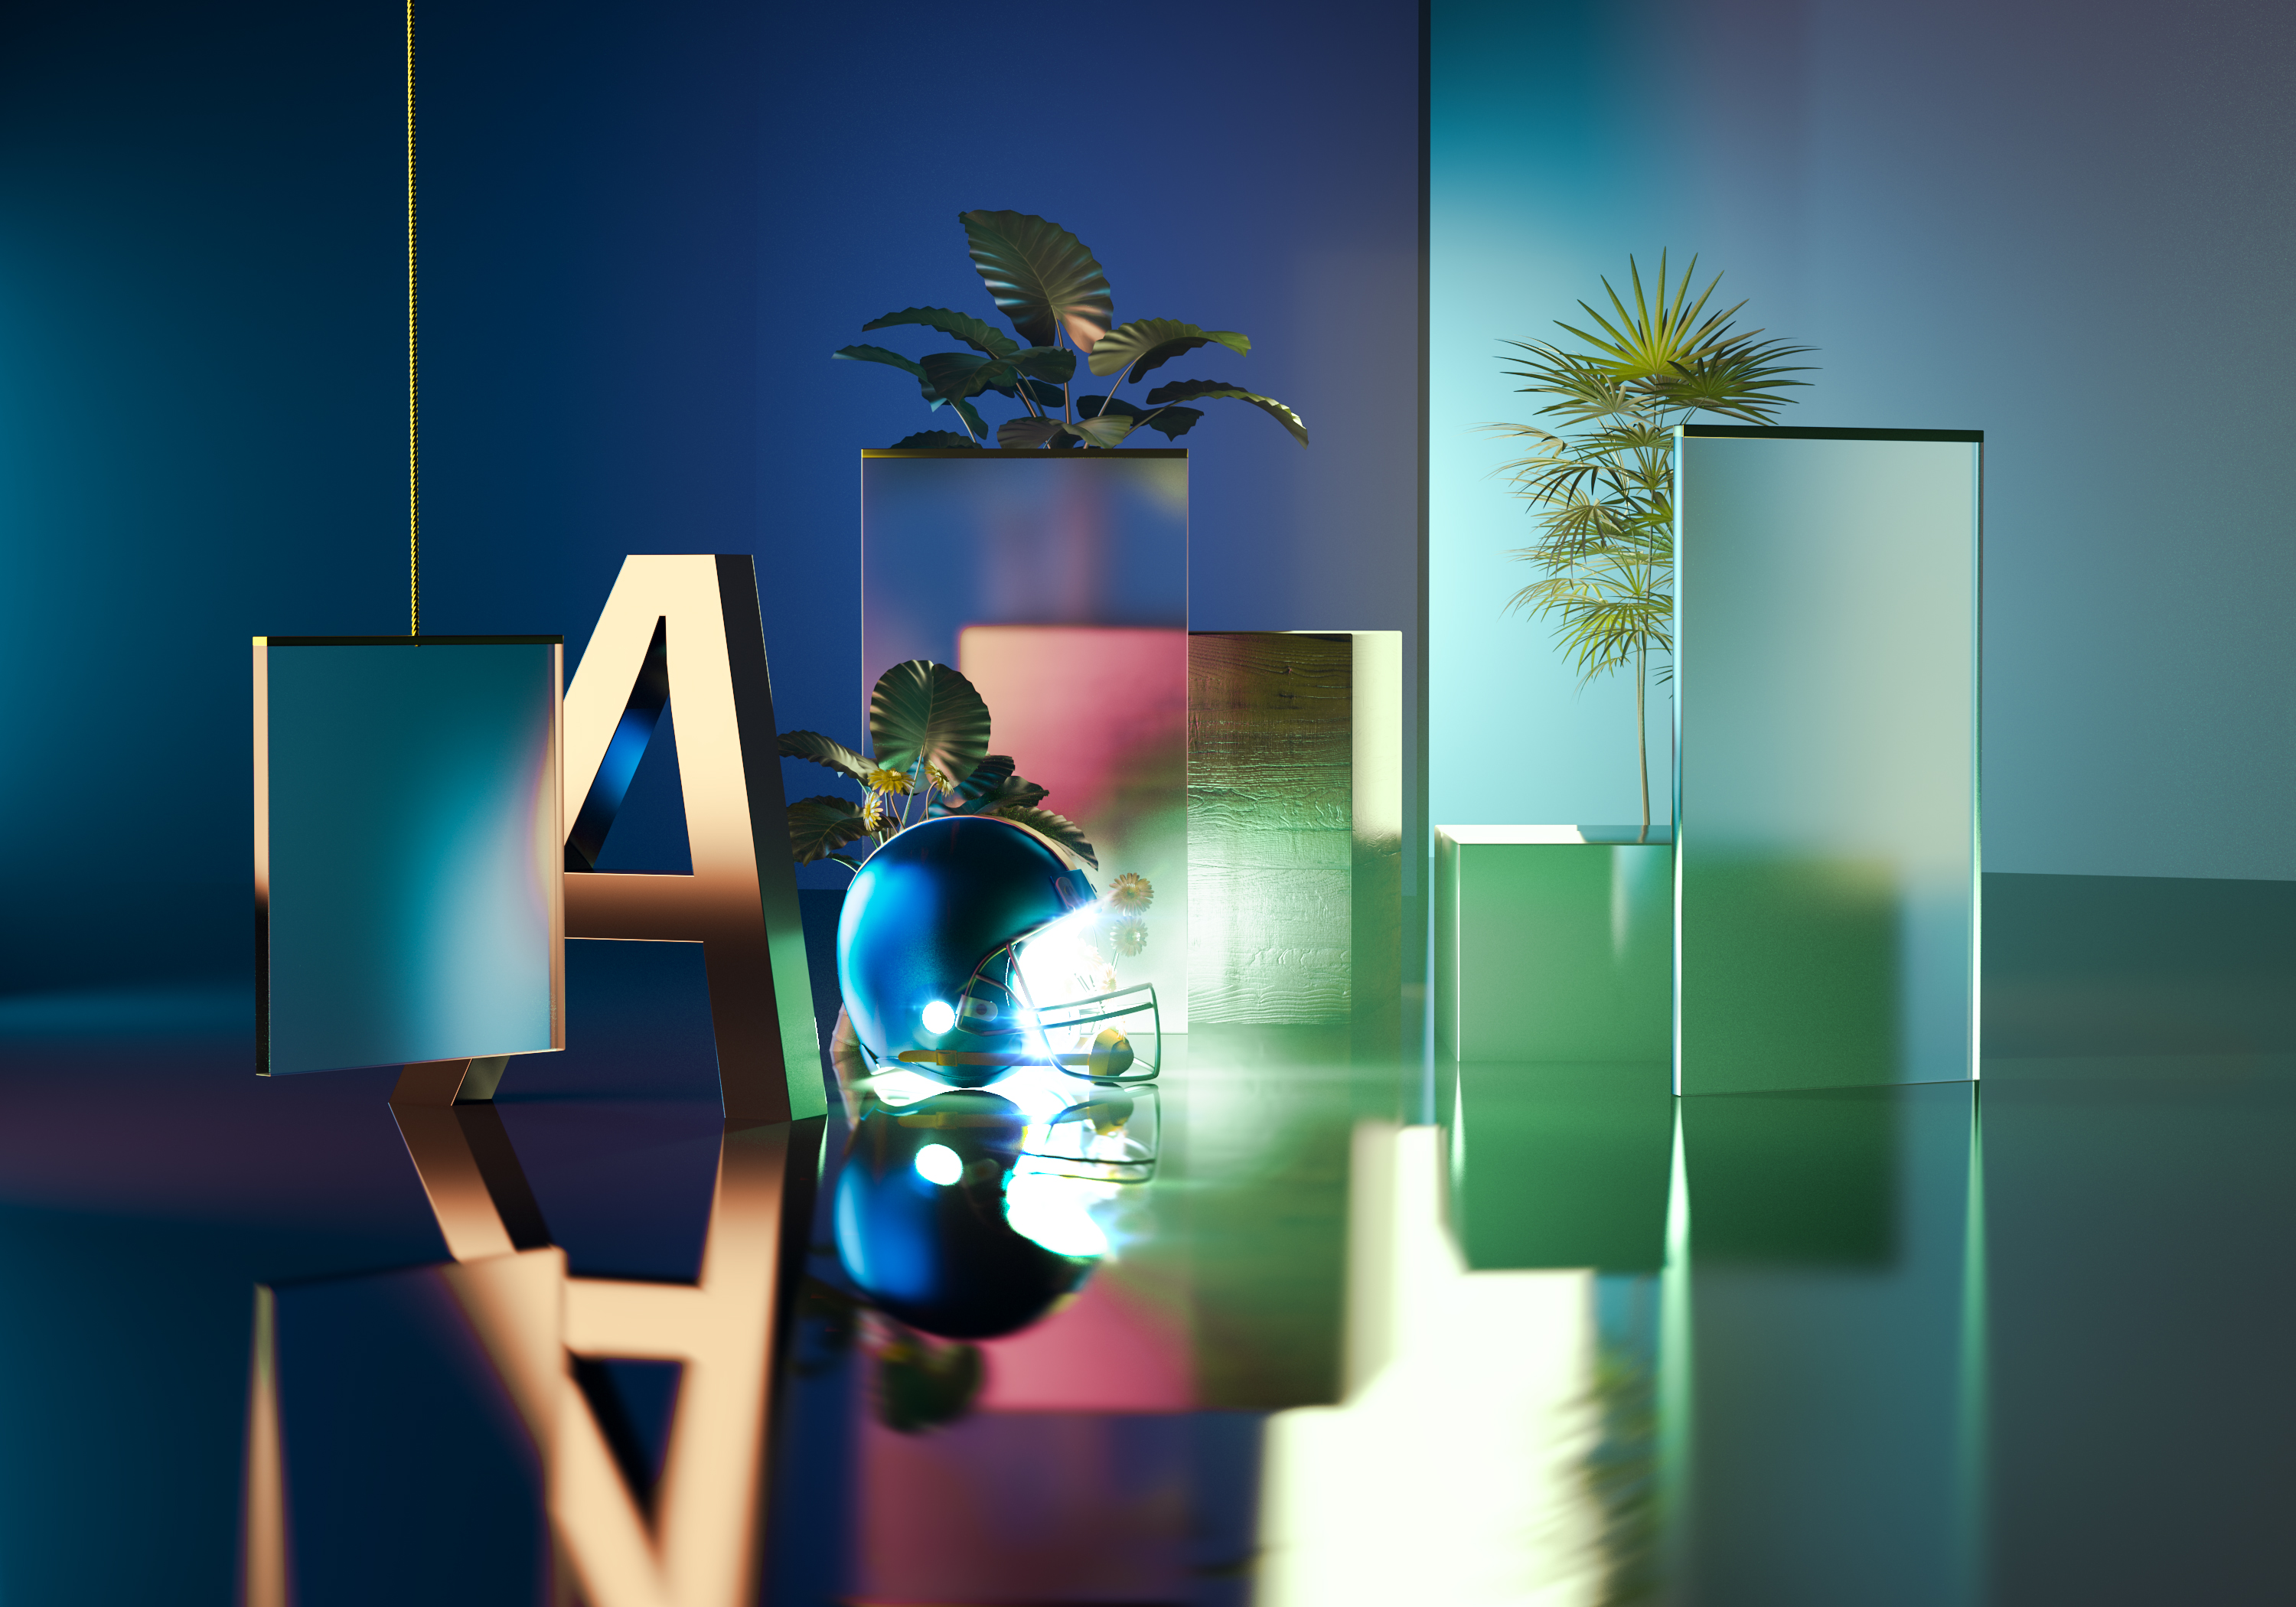 Les créations minimalistes en 3D de Rafael Merino